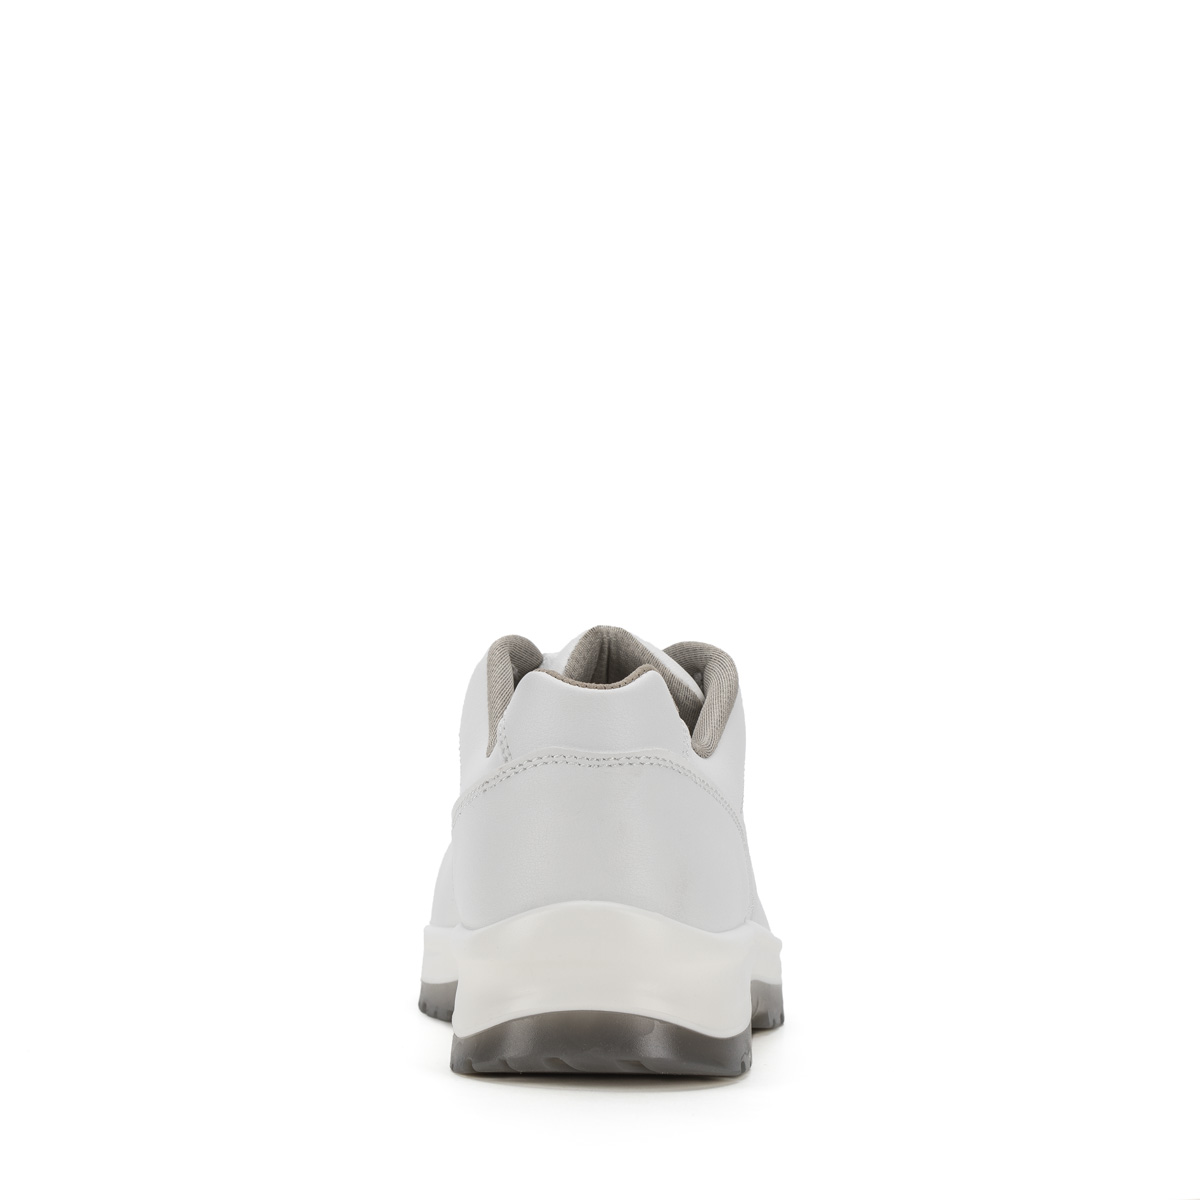 Crystal BIELLA - Low Shoe con classe di protezione S2 SRC - Codice modello  86205-00 Sixton Peak Safety Shoes